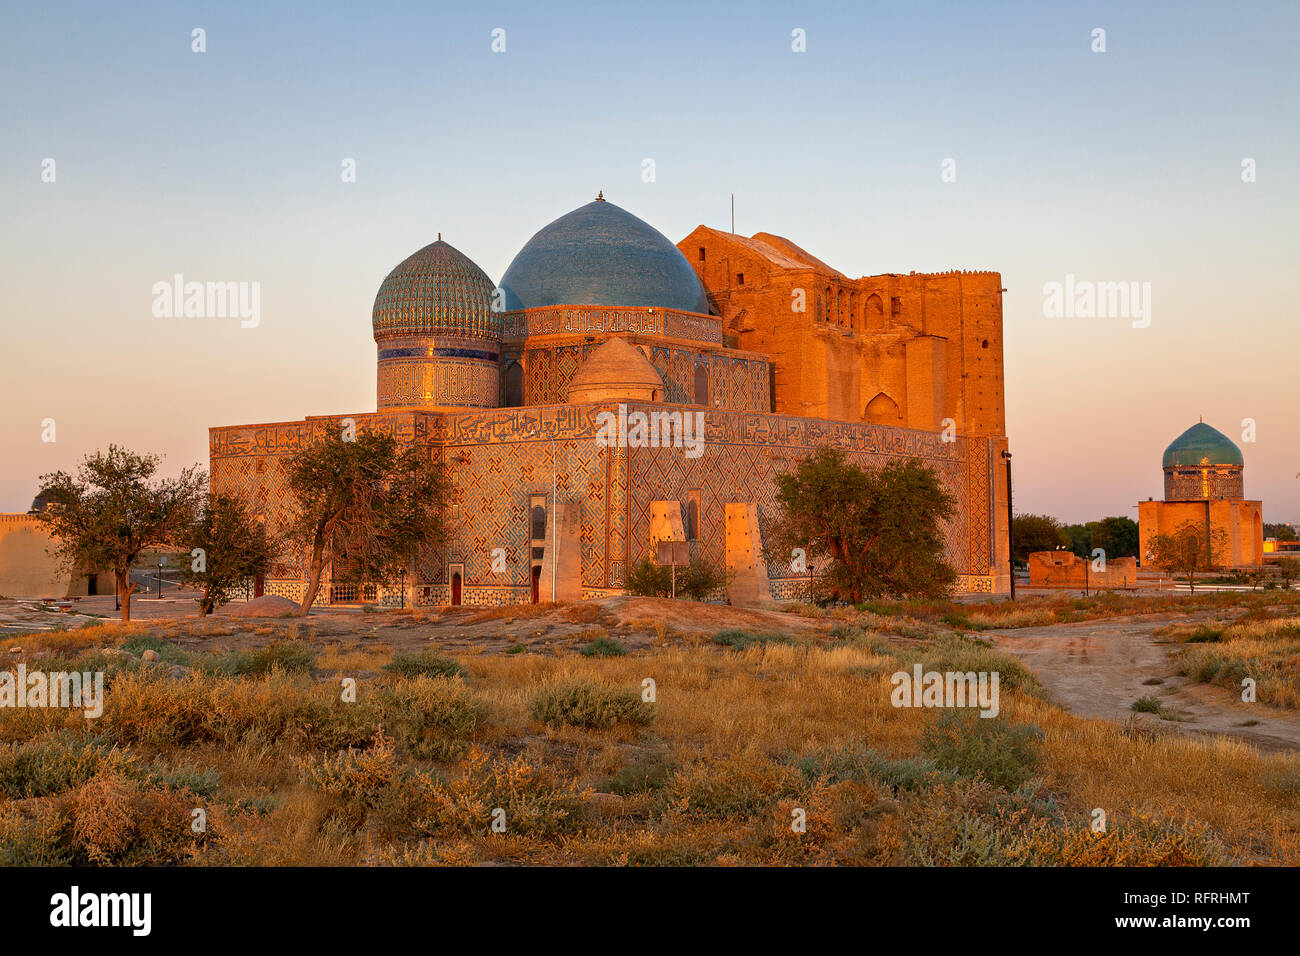 Mausoleum von Khoja Ahmed Yasawi in Turkestan bei Sonnenaufgang, Kasachstan. Stockfoto